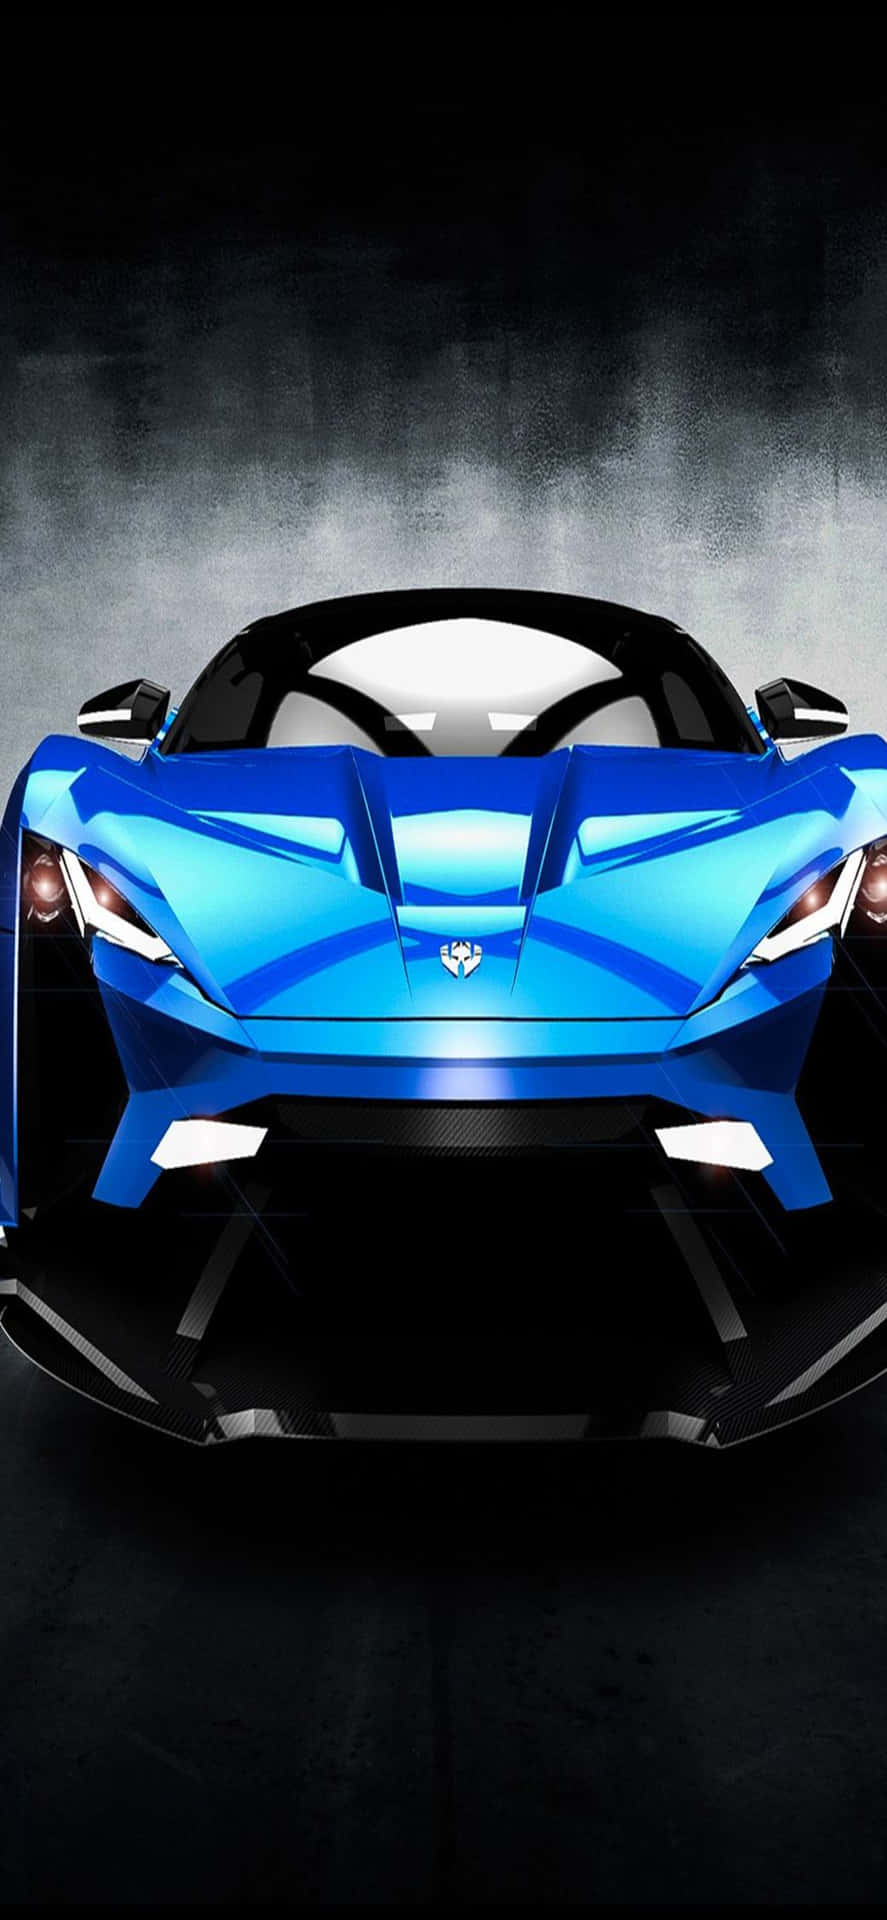 Fondode Pantalla Para Iphone Xs Max Con Ferrari Azul Y W Motors Lykan Hypersport.